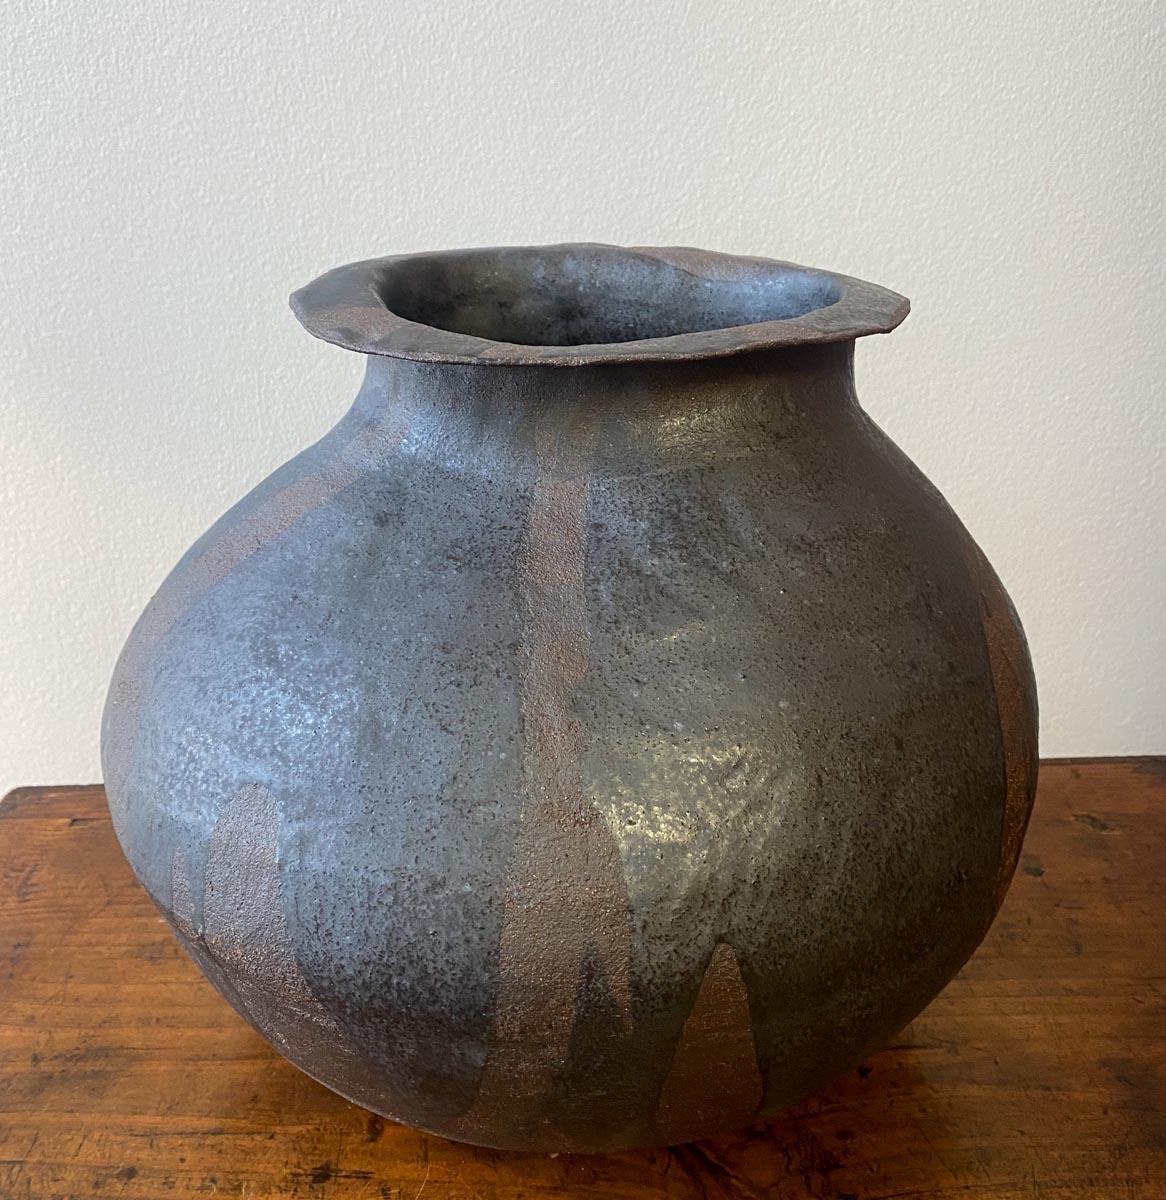 Pot en terre cuite fabriqué à la main par l'artiste céramiste Sally Terrell de Santa Barbara, Californie. Argile foncée, cuite à haute température, avec glaçure.